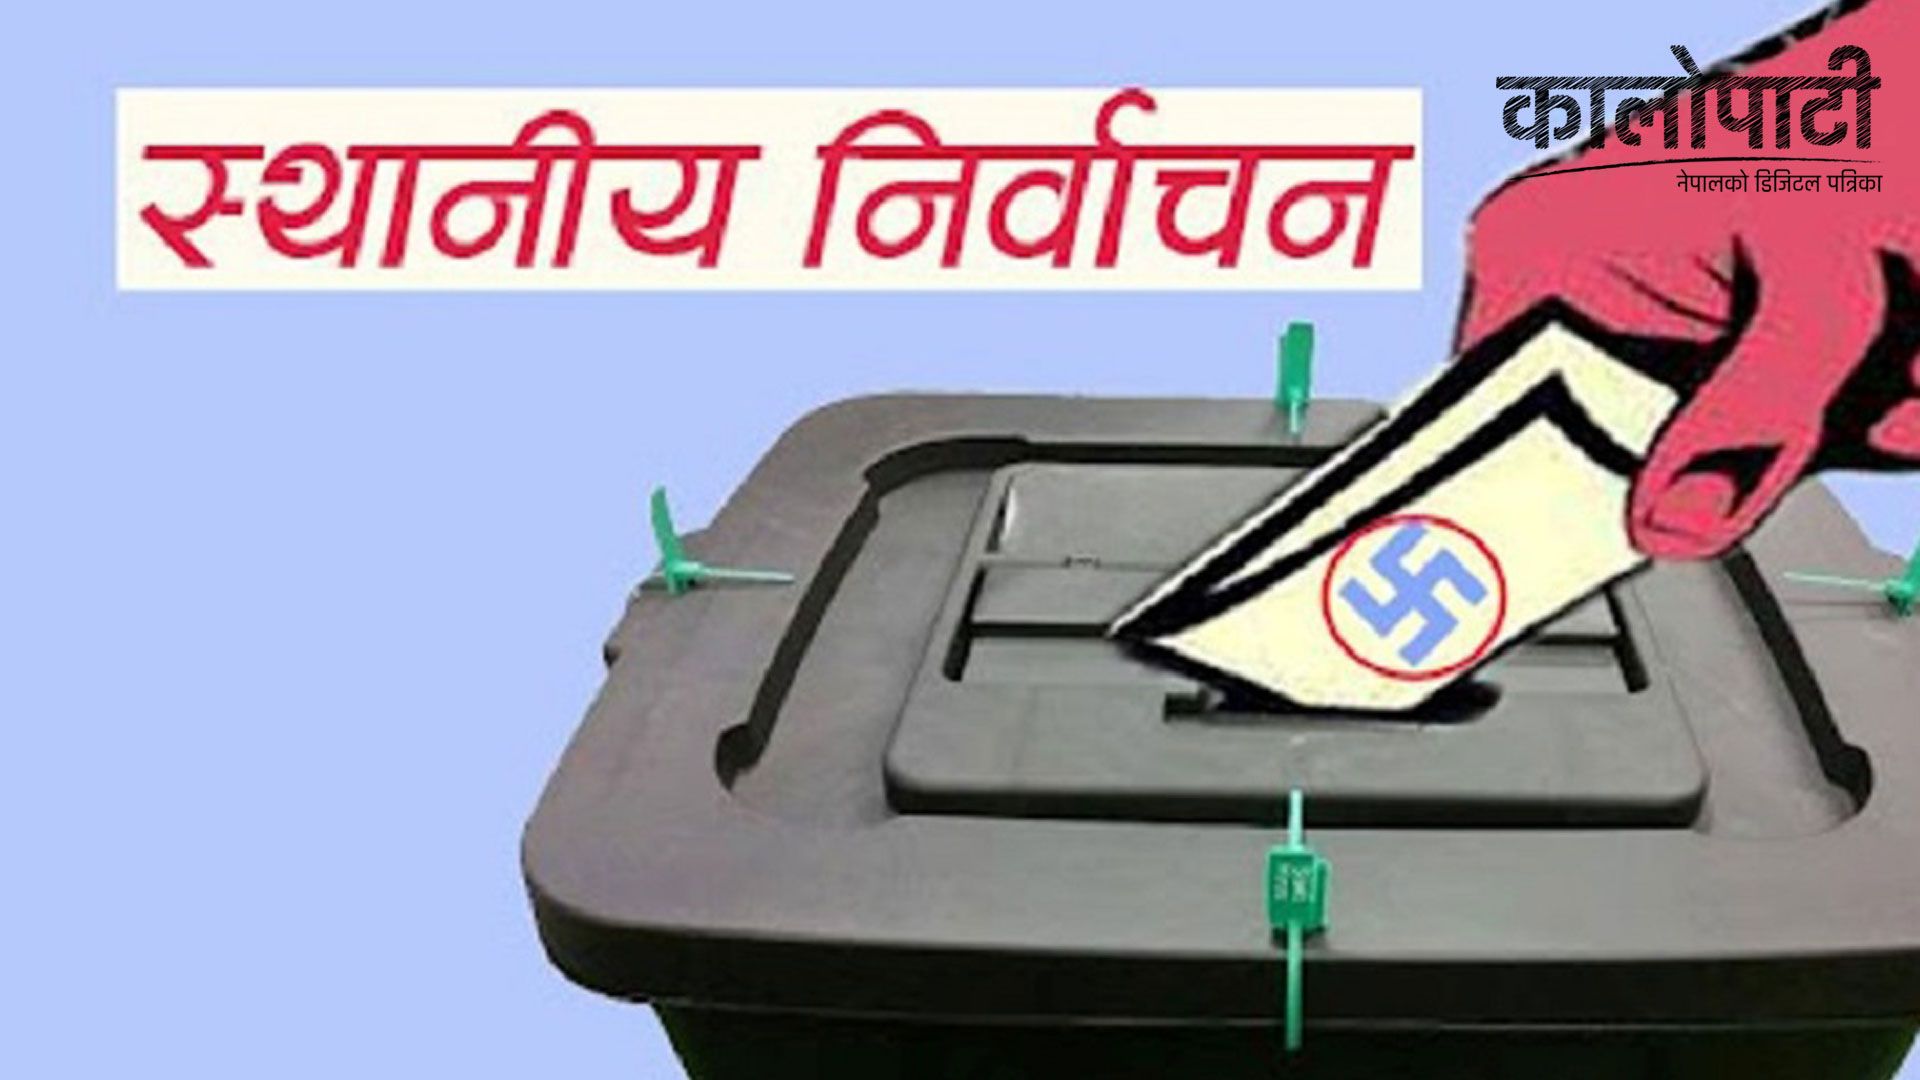 स्थानीय तह निर्वाचन : बागलुङमा बढ्यो चुनावी सरगर्मी, अब मतदान गर्ने १० दिनमात्र बाँकी